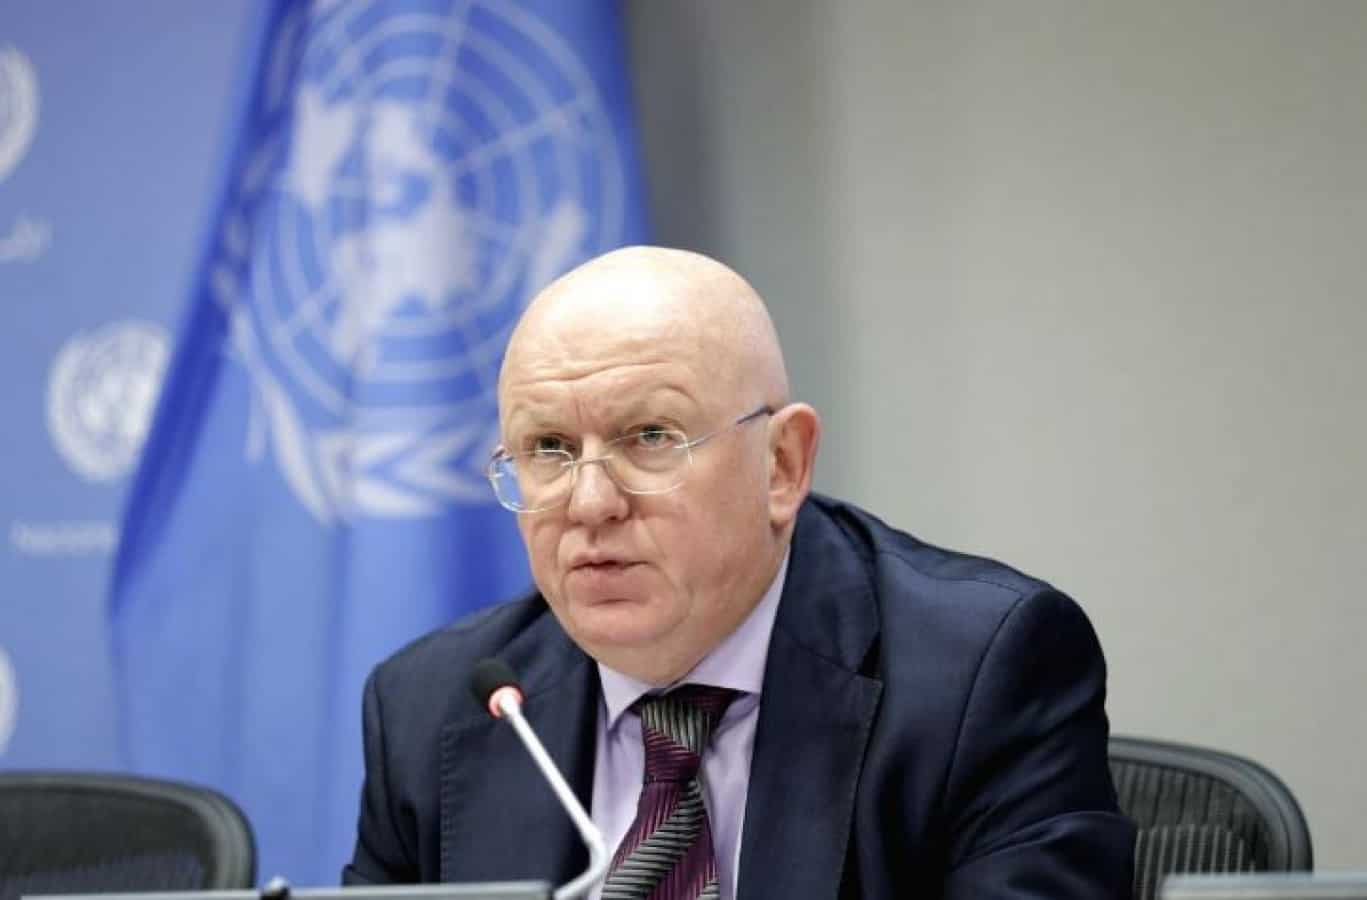 Русија у Савету безбедности УН ставила вето на Нацрт резолуције о клими